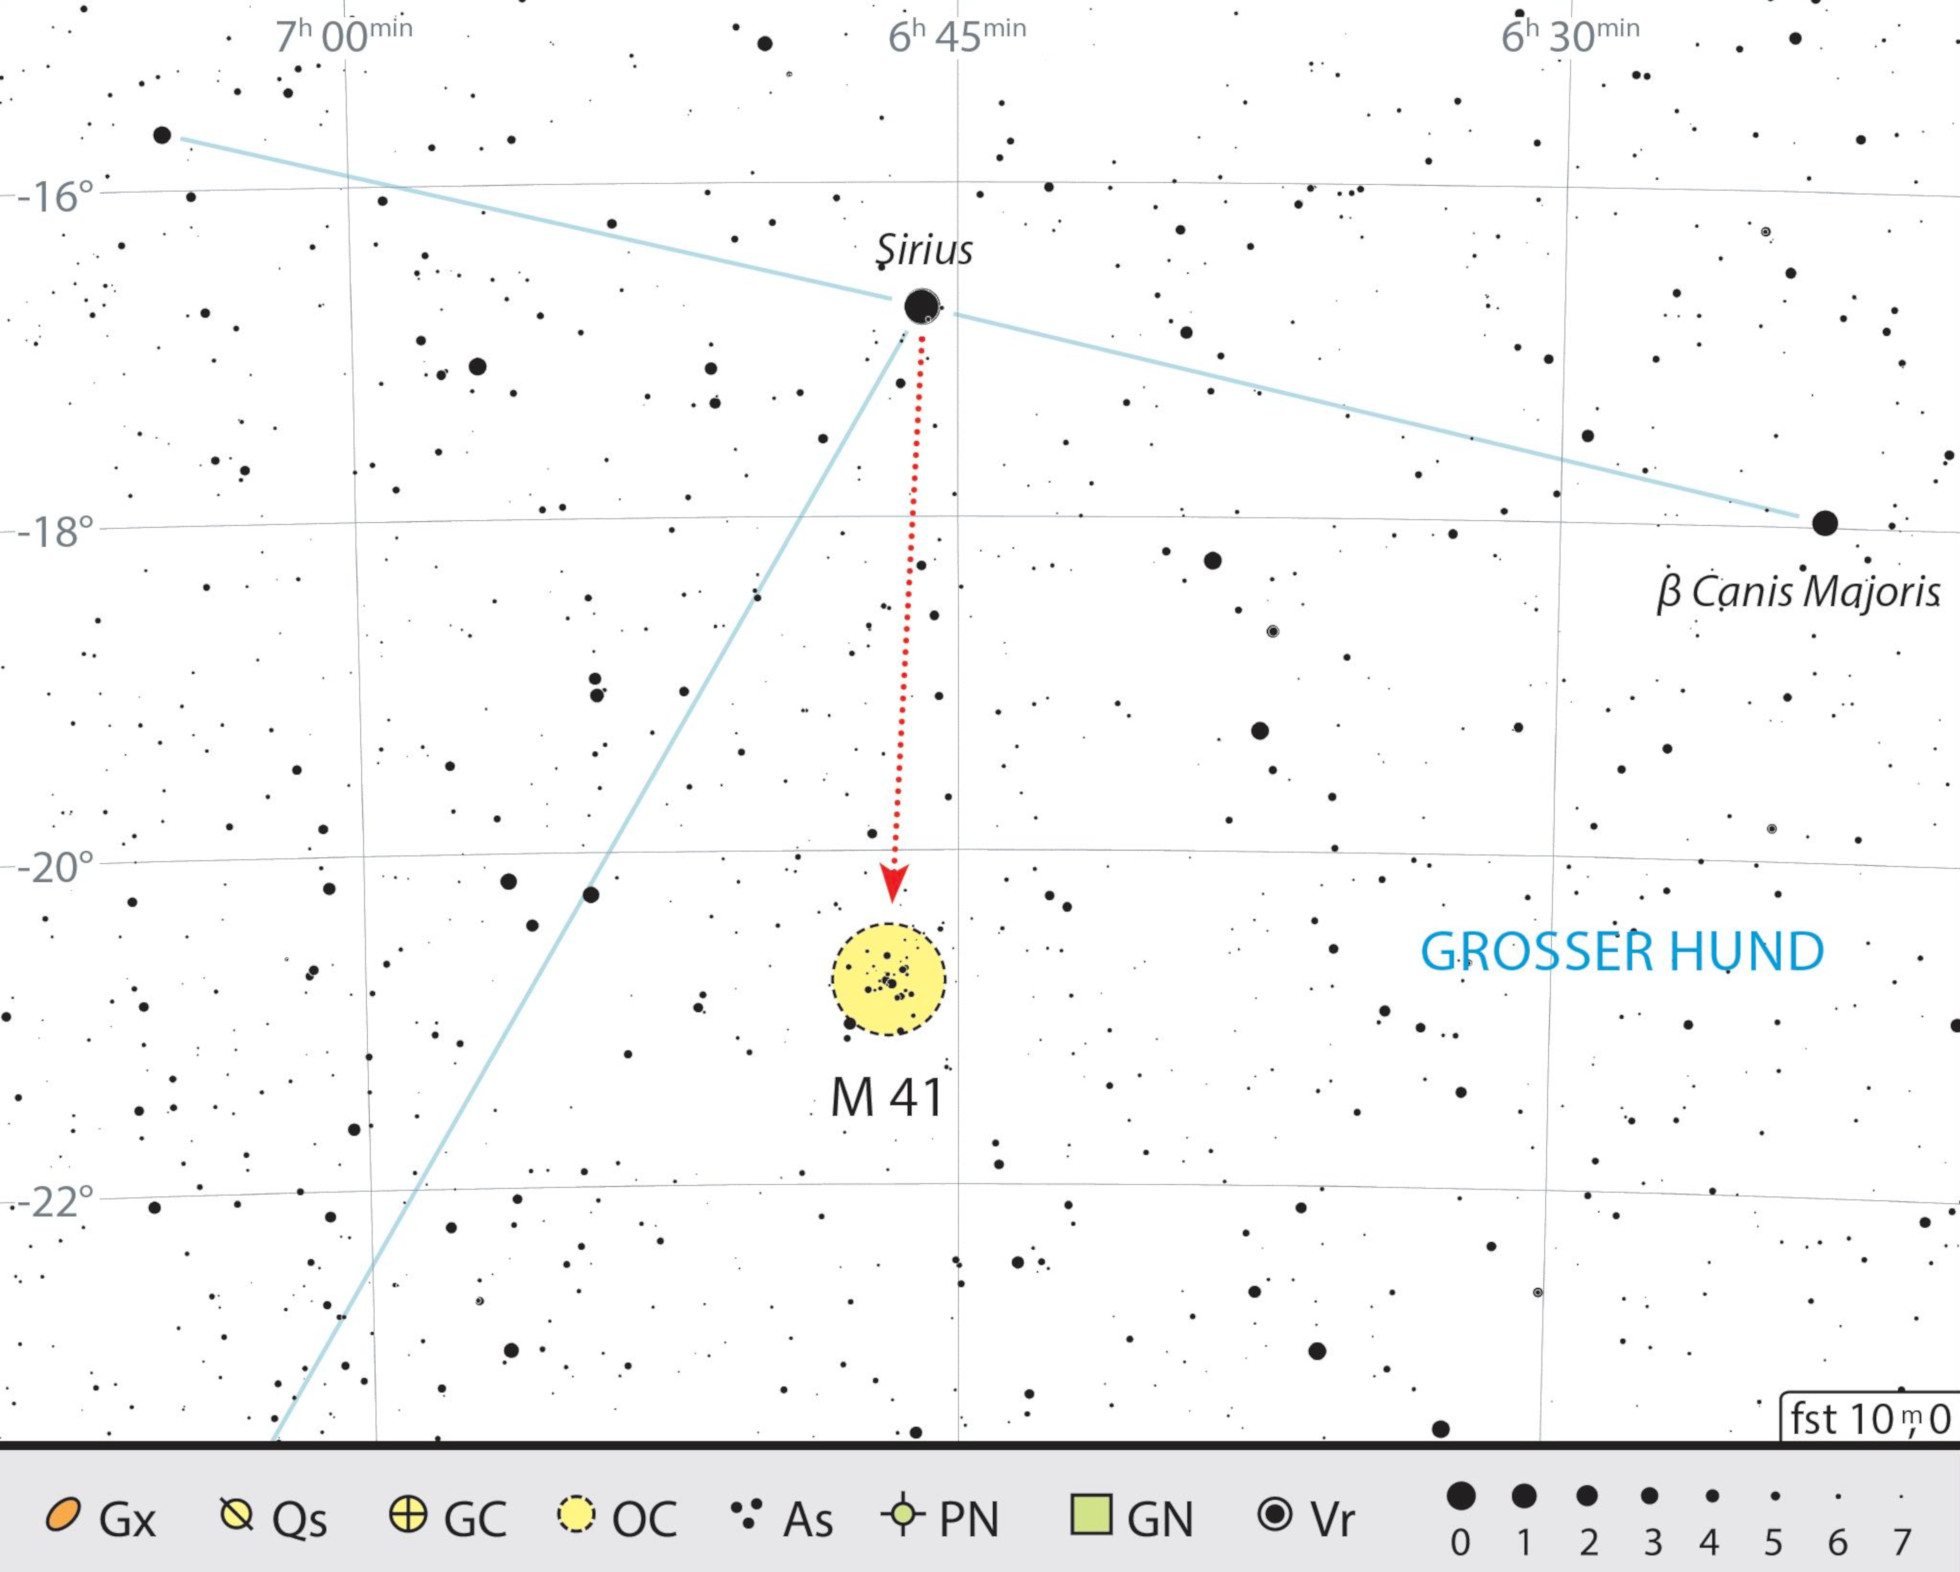 Mappa celeste per Messier 41 nella costellazione del Cane Maggiore. J. Scholten